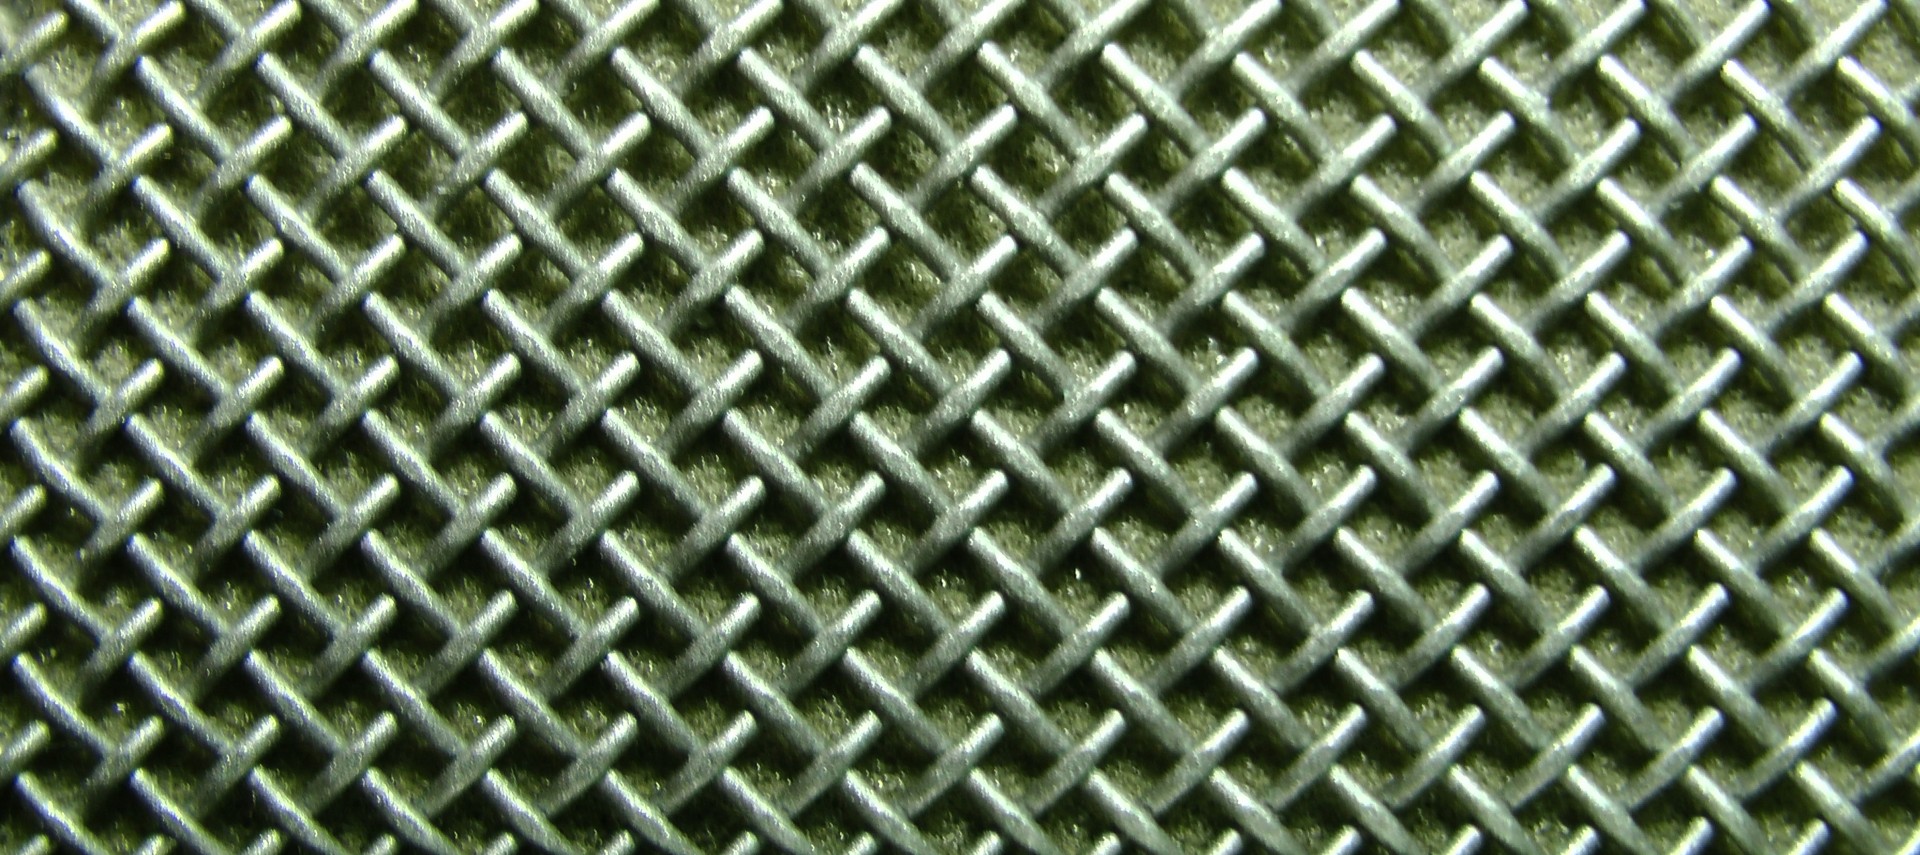 mesh meshing wire free photo